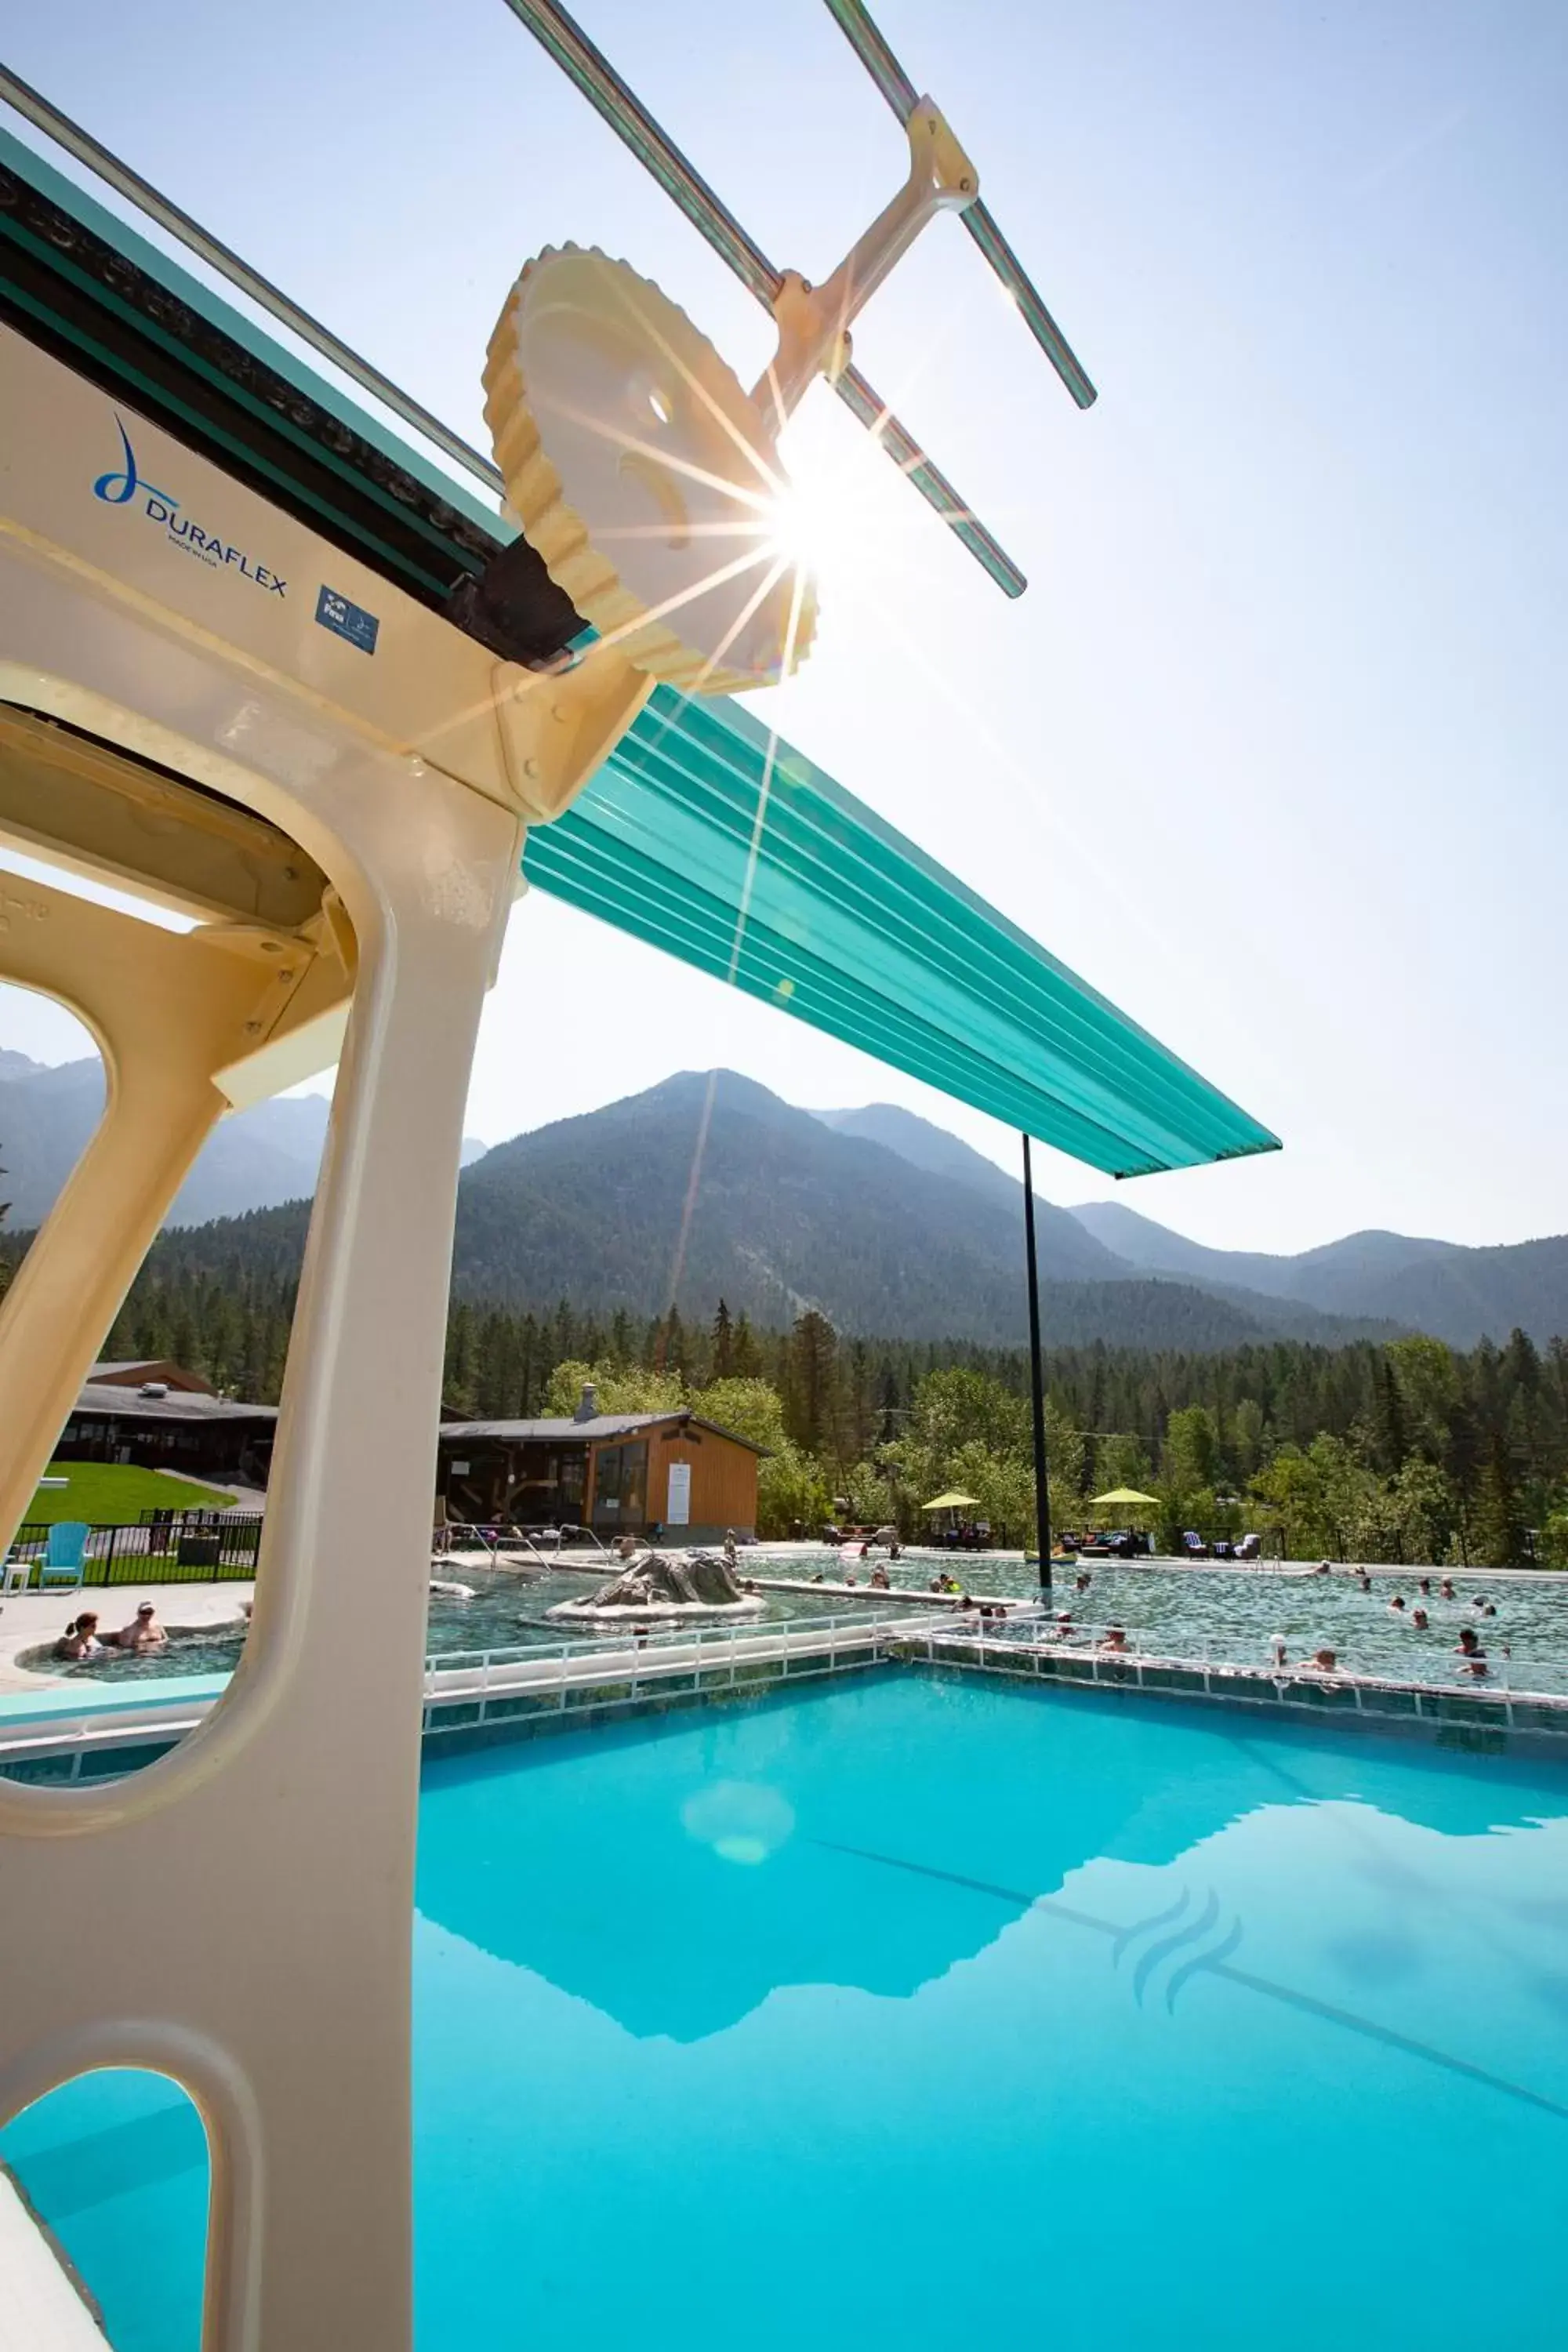 Swimming Pool in Fairmont Hot Springs Resort